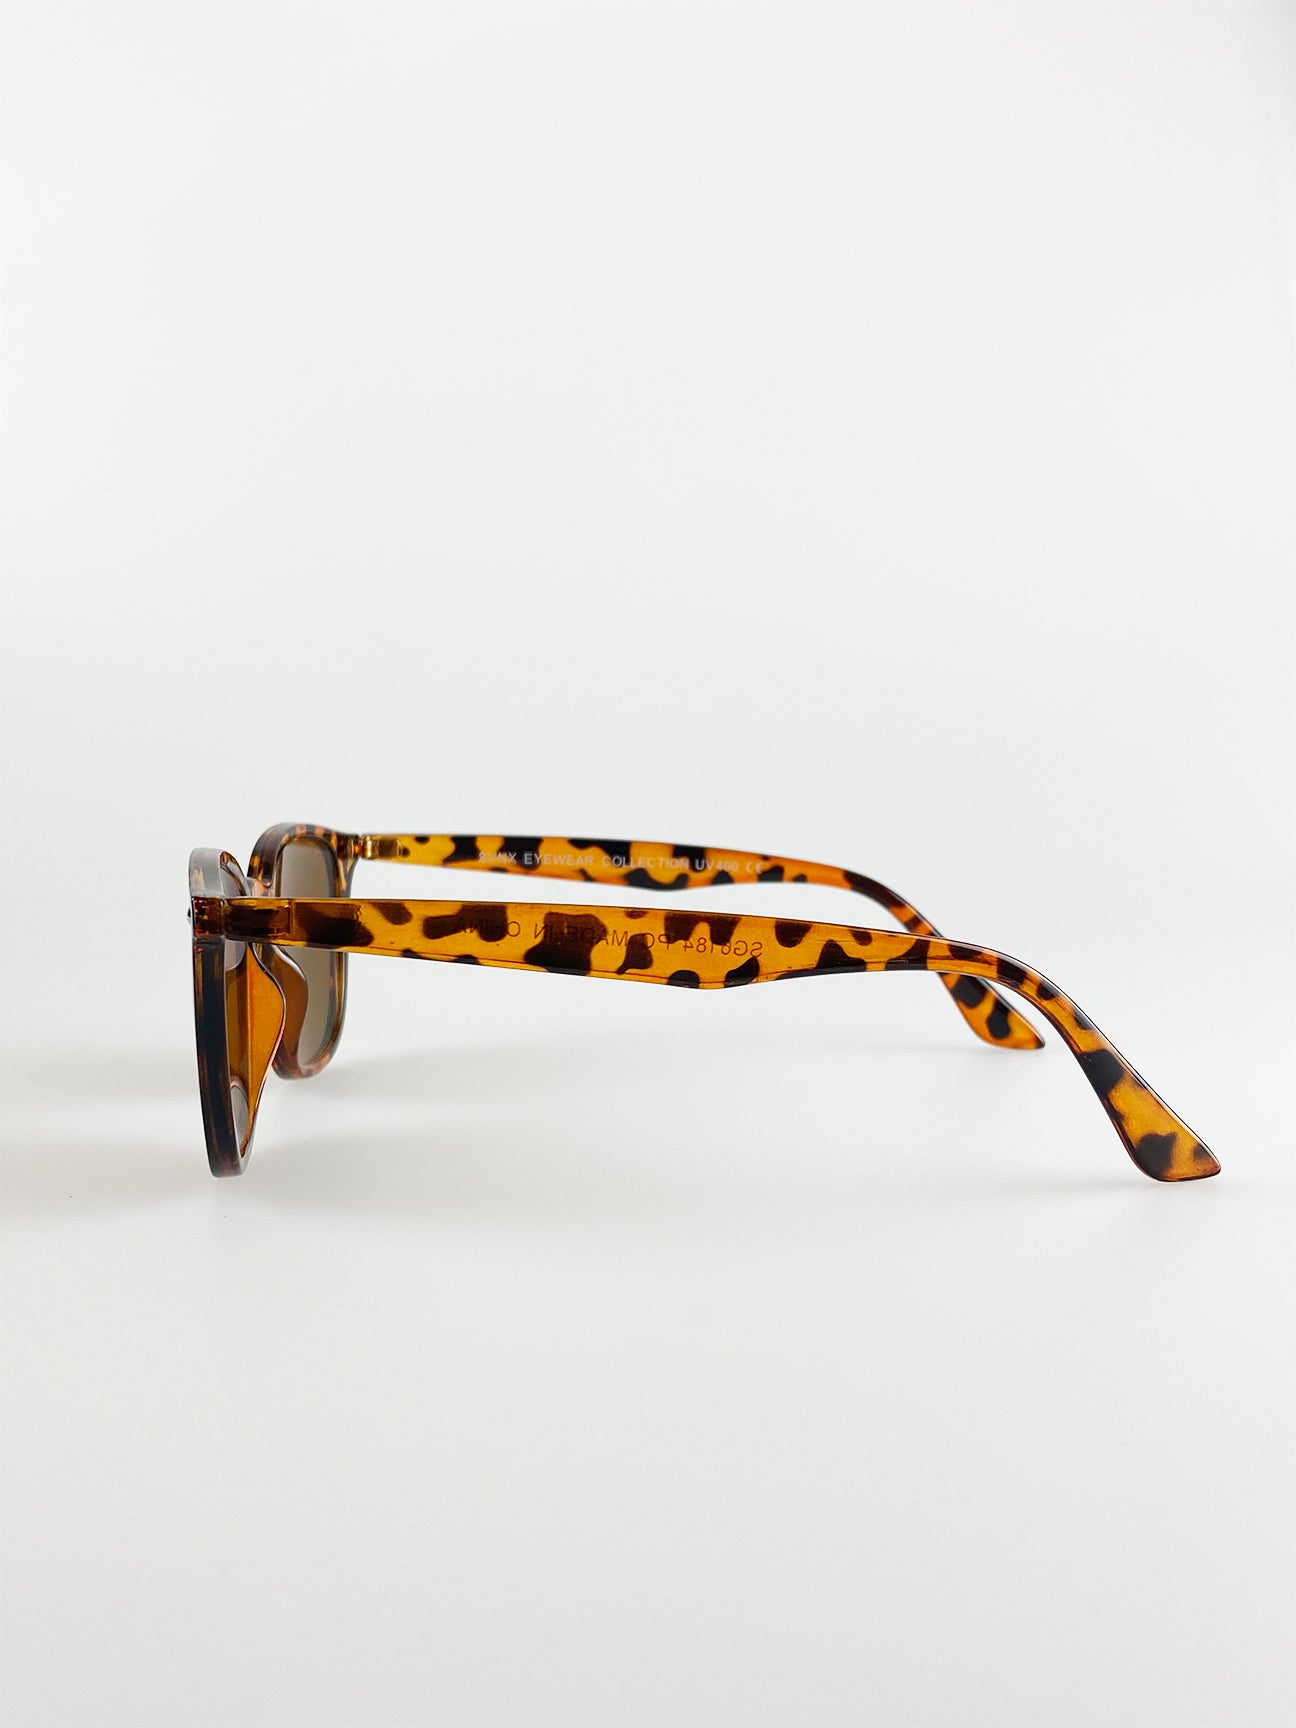 Tortoise Shell Wayfarer Sunglasses